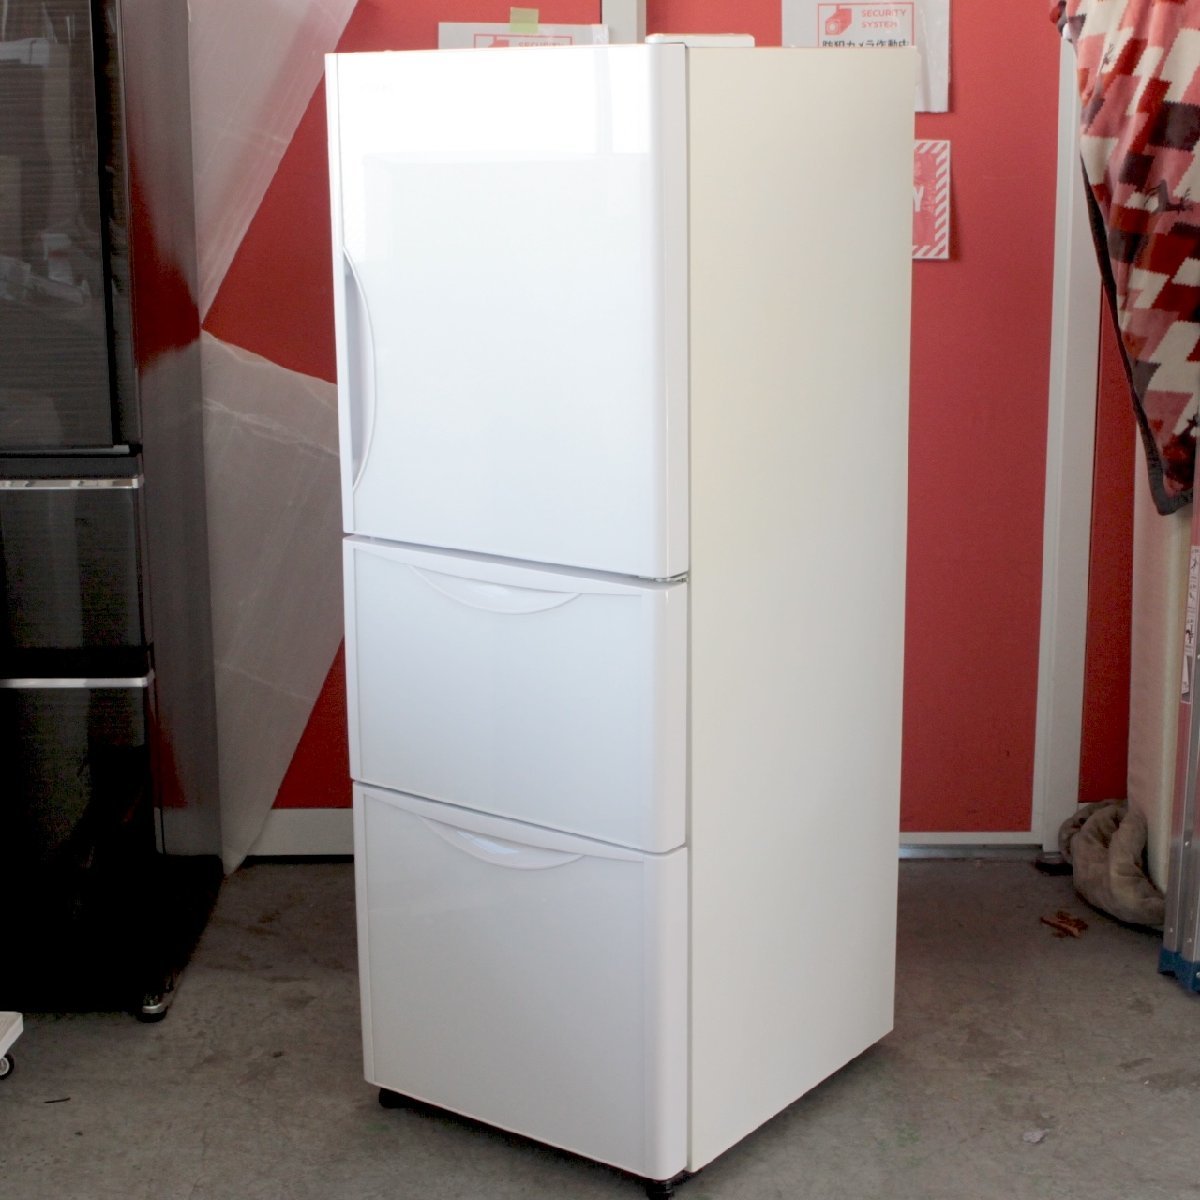 取置】T871) 日立 3ドア 265L 2019年製 R-S27JV(xw) 右開き クリスタルドア まんなか野菜室 自動製氷 HITACHI ノンフロン冷凍冷蔵庫_画像1